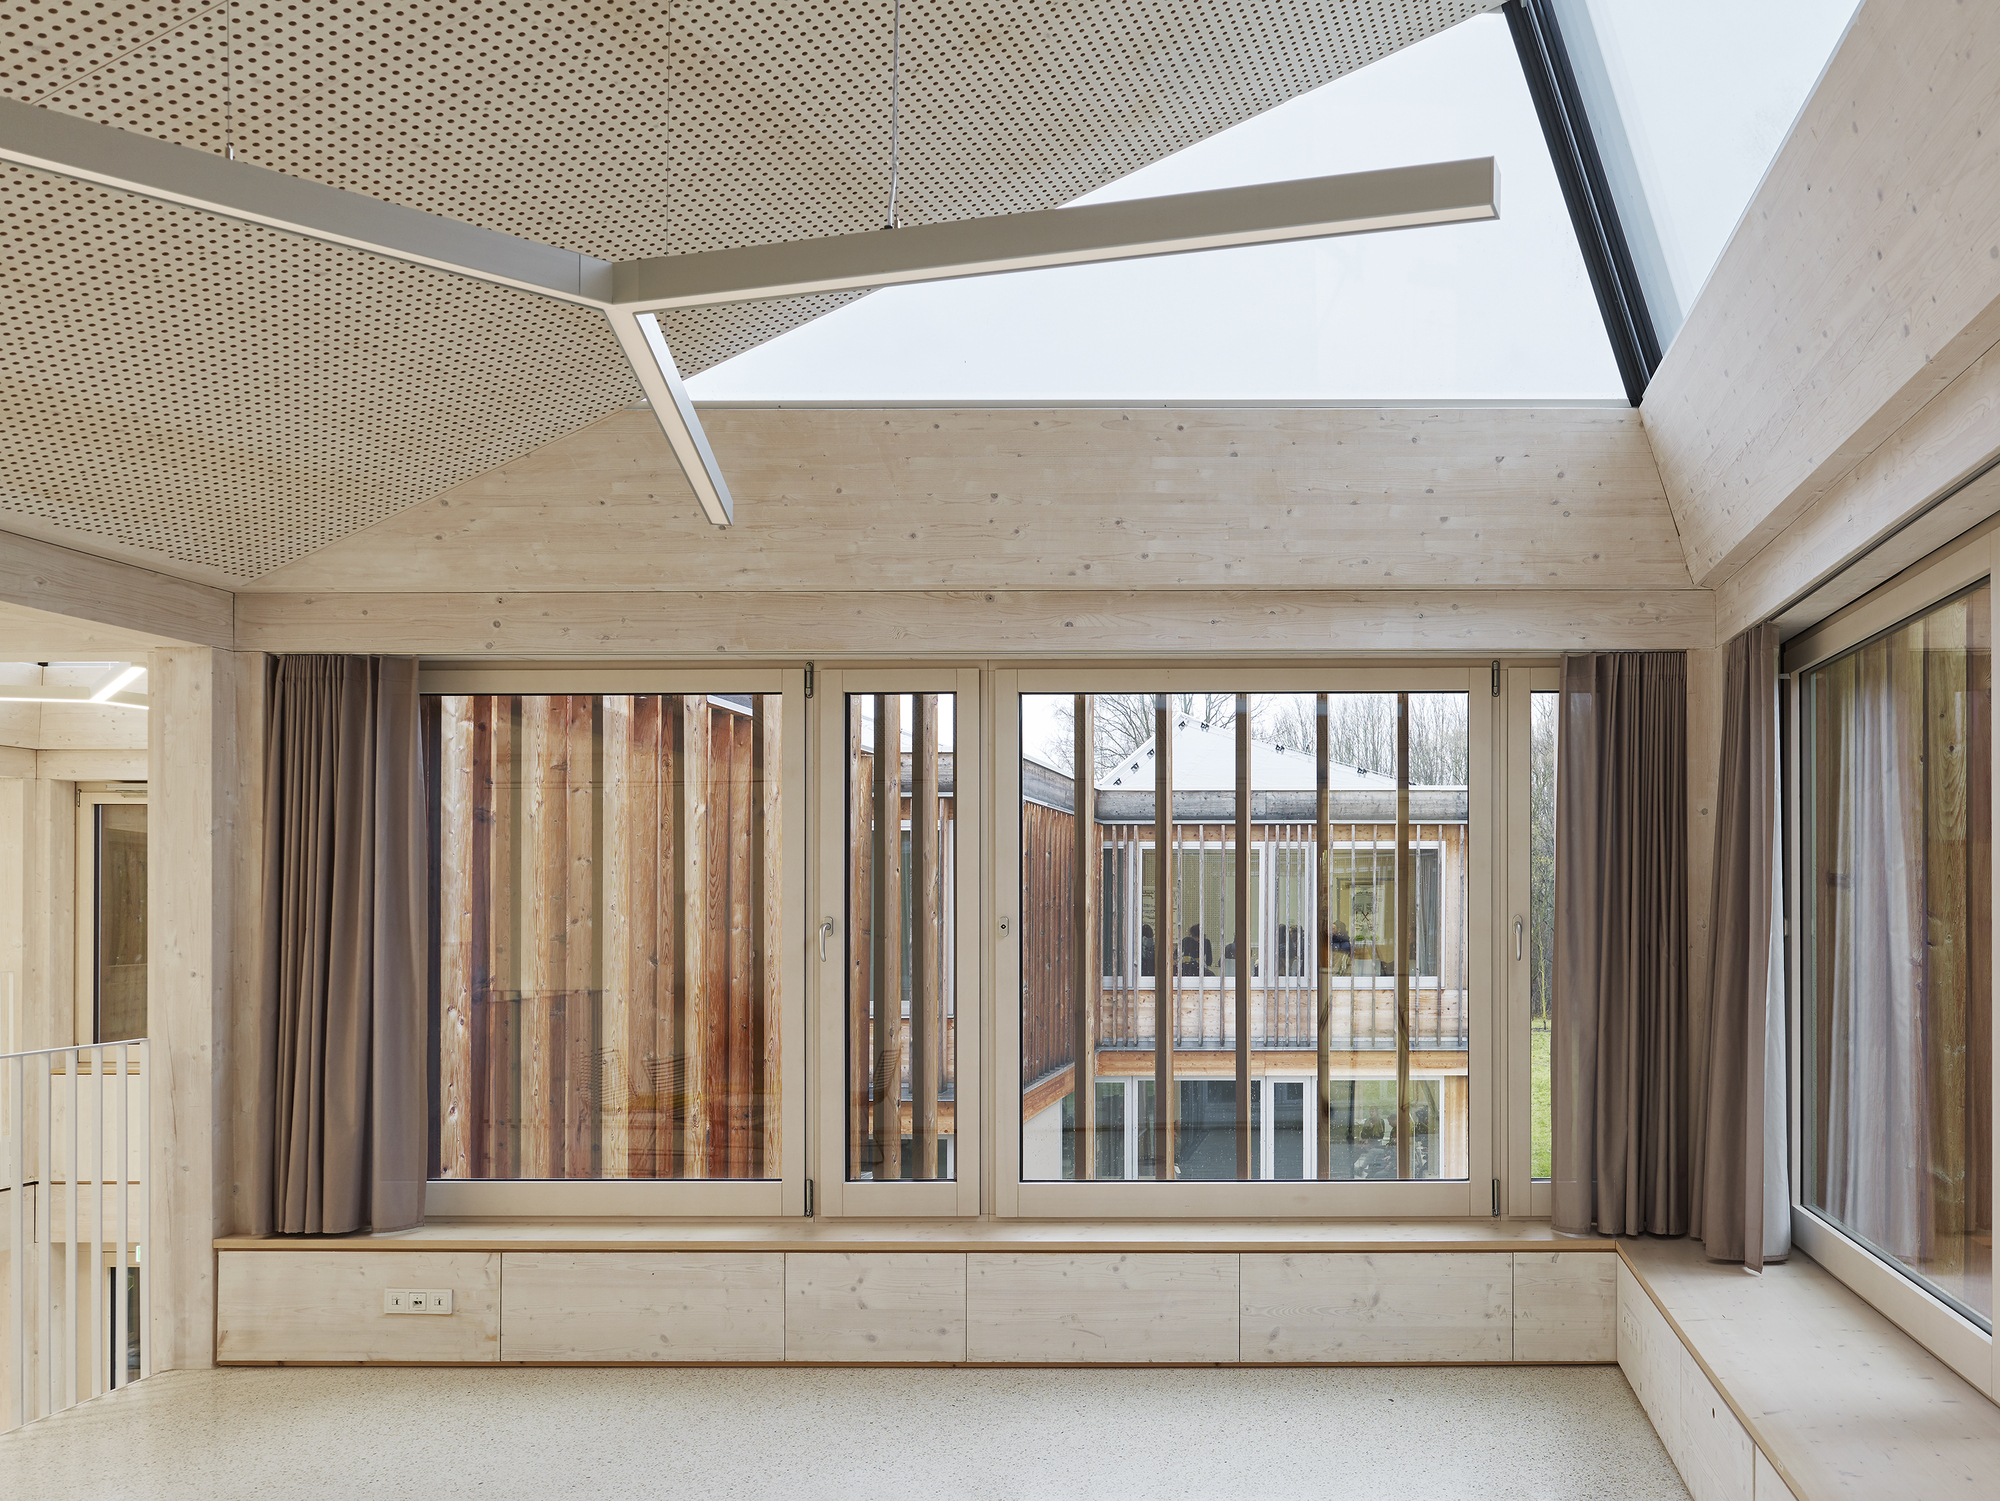 图片[4]|褶皱屋顶，德国国际合作学院 / Waechter + Waechter Architekten|ART-Arrakis | 建筑室内设计的创新与灵感